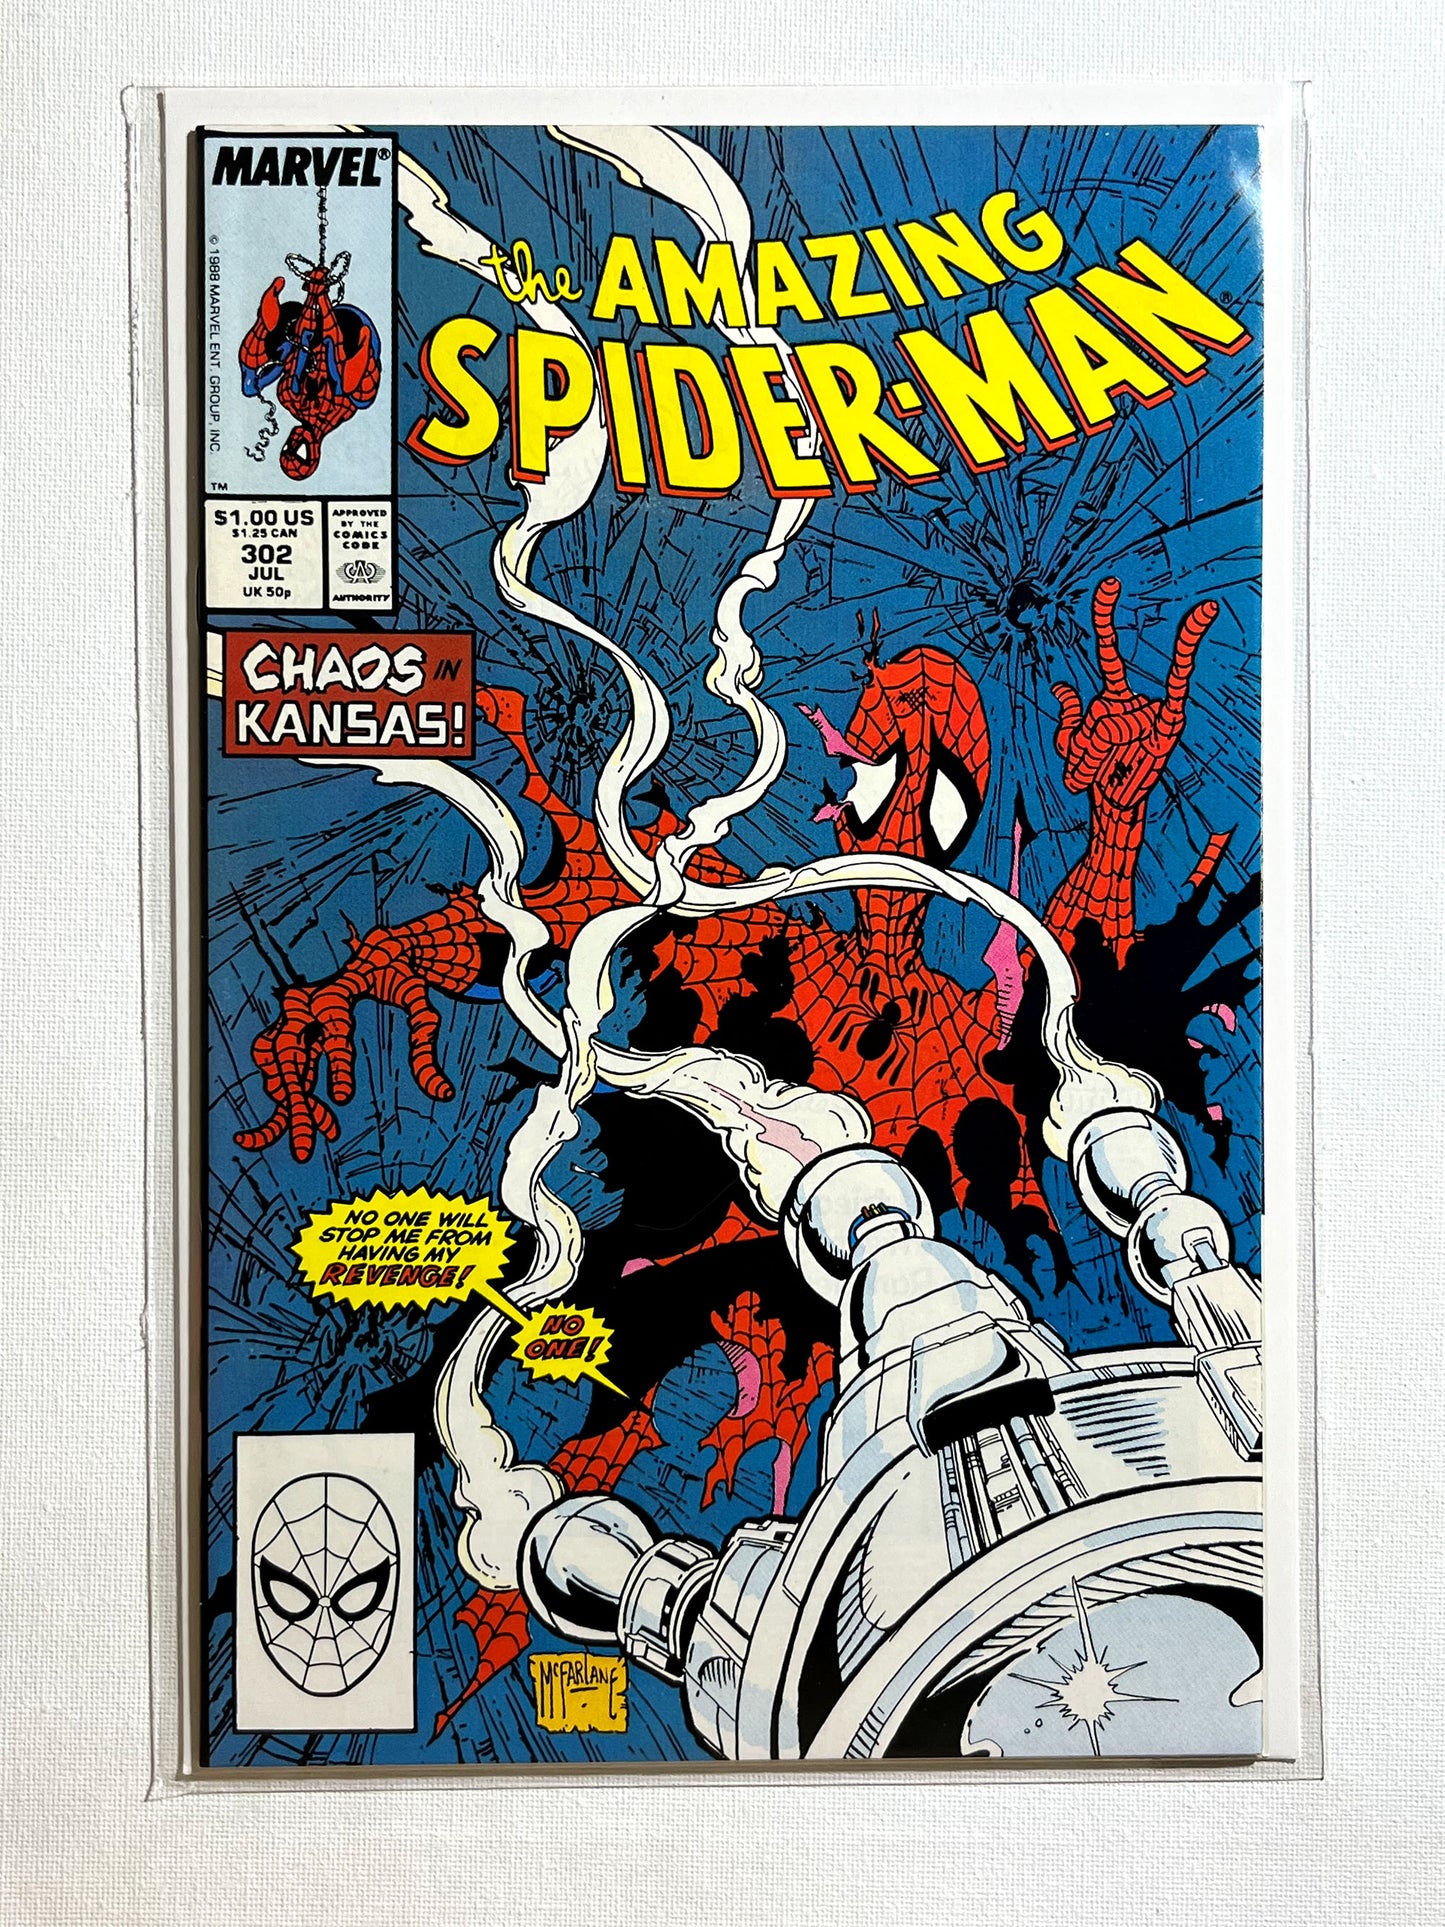 Amazing Spider-Man #302